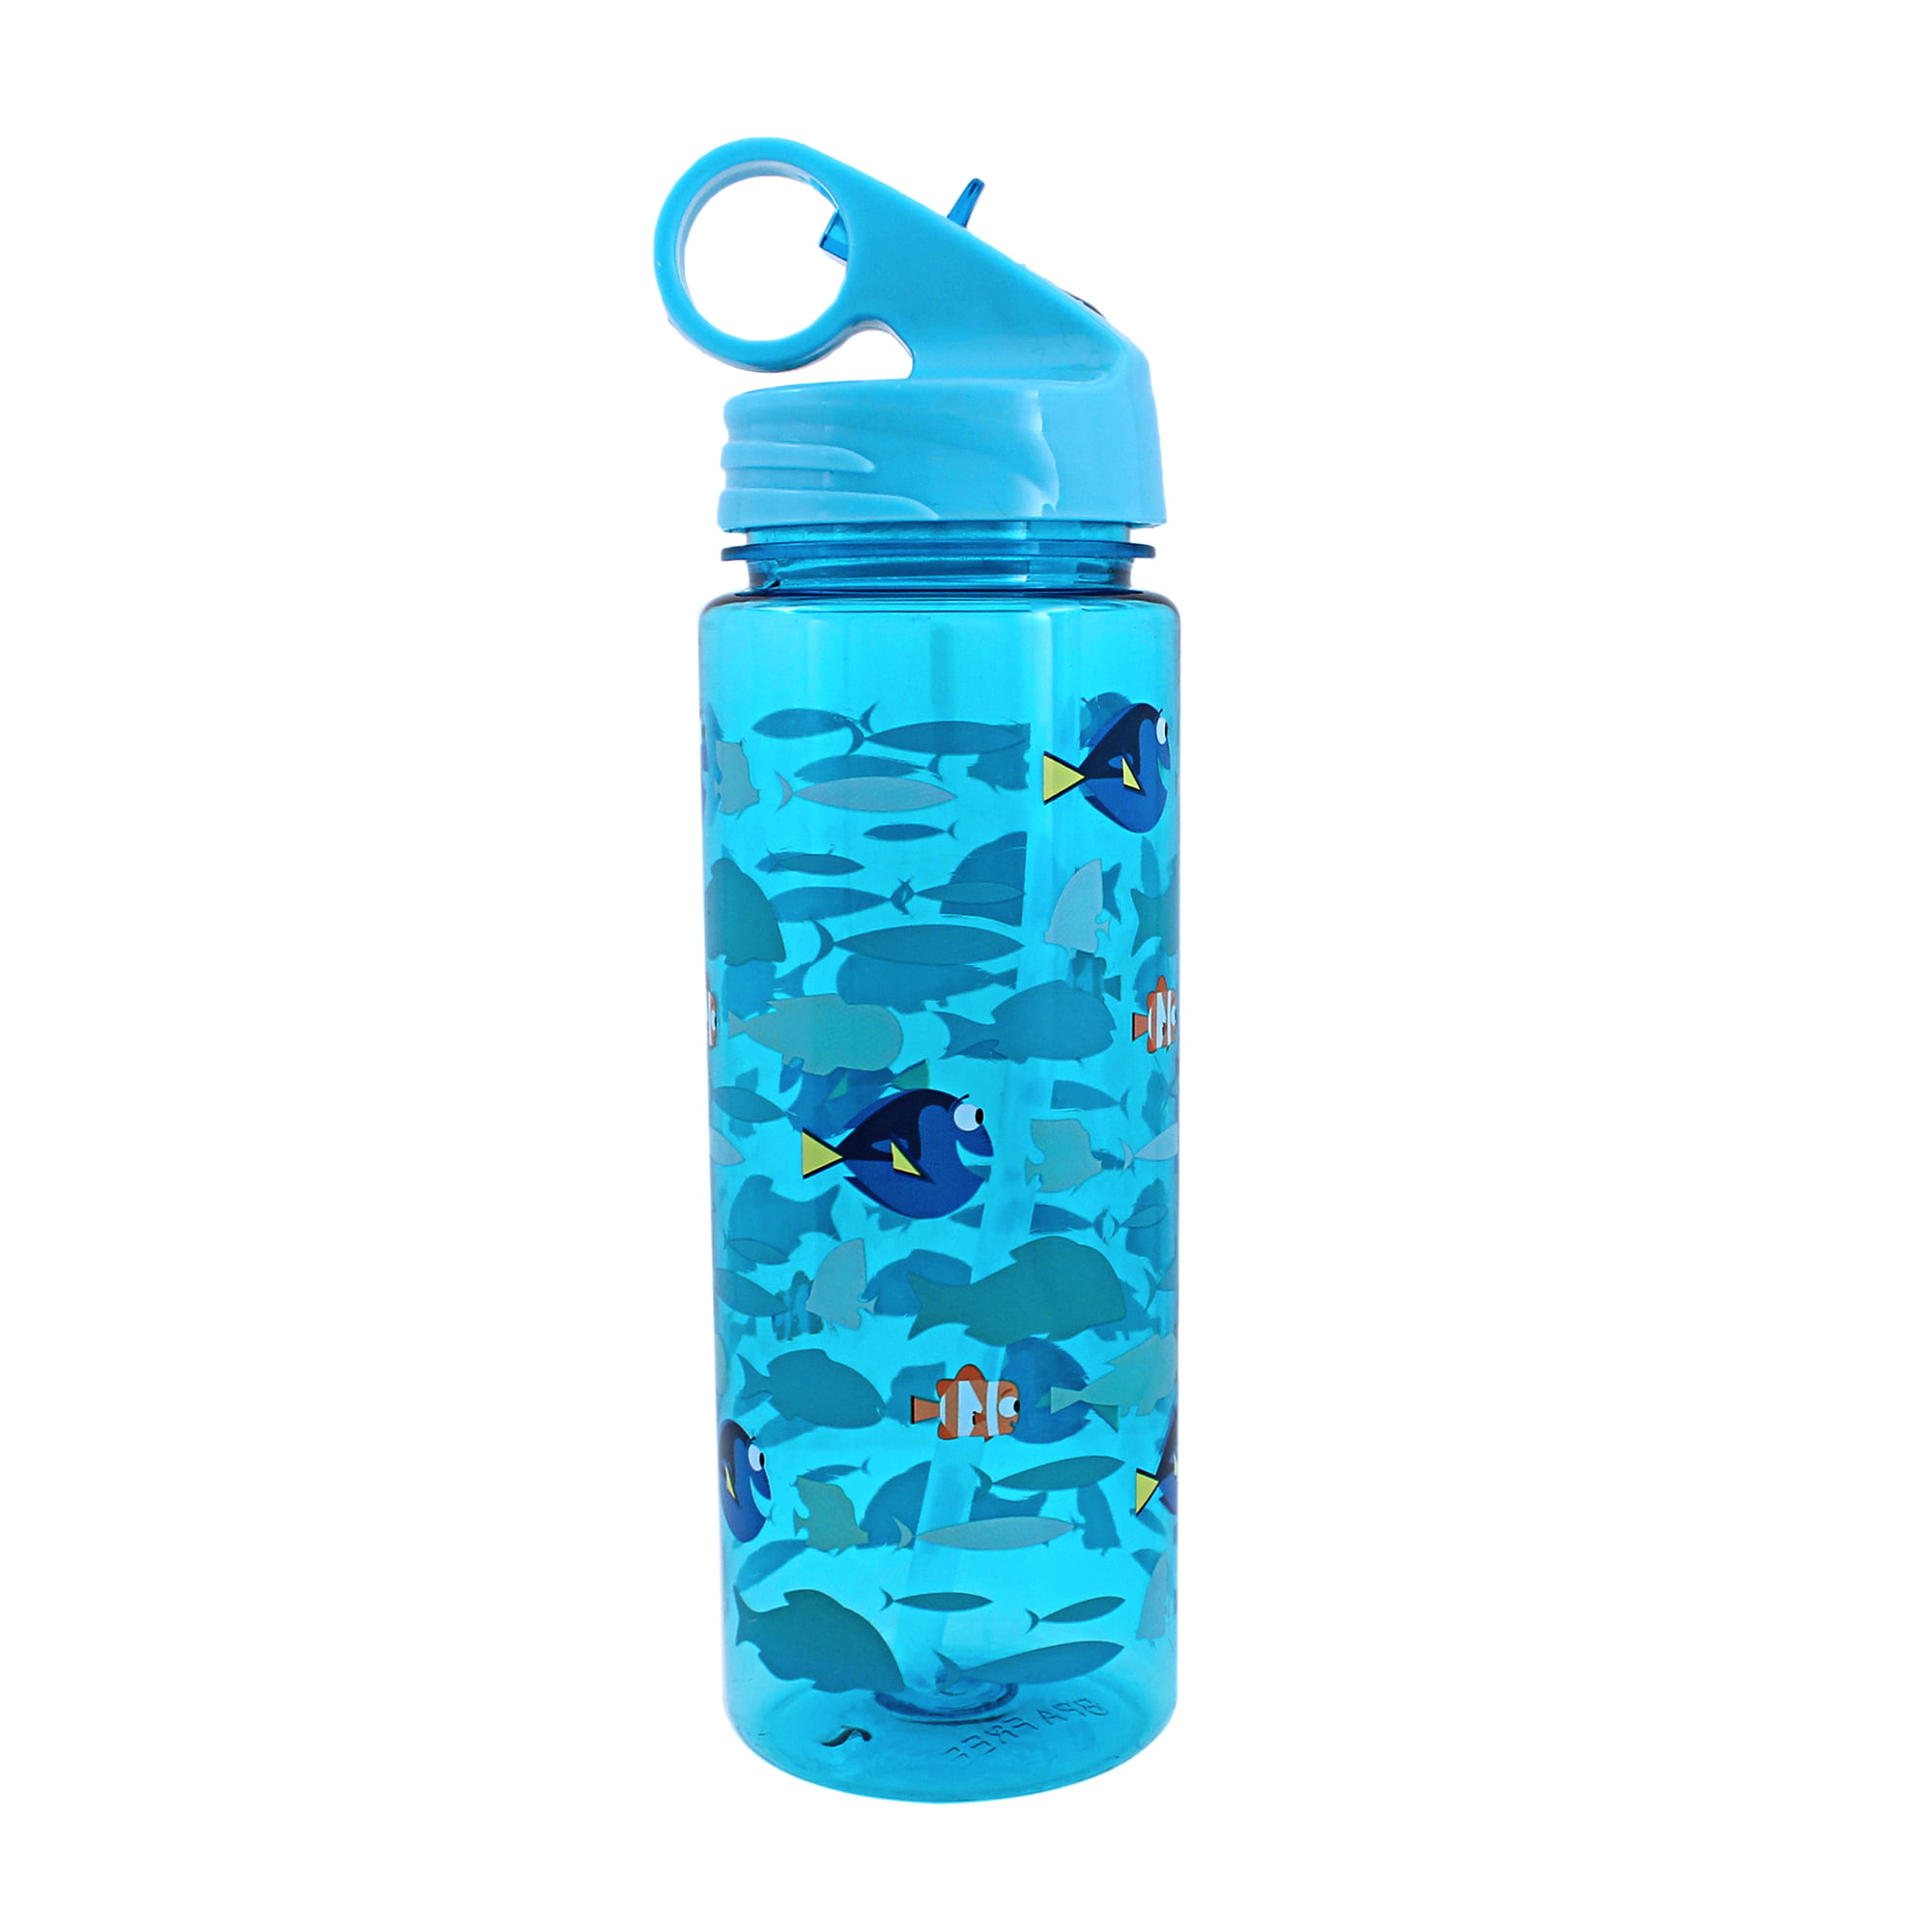 Finding Dory and Nemo in School 600ml Tritan Water Bottle - Walmart.com